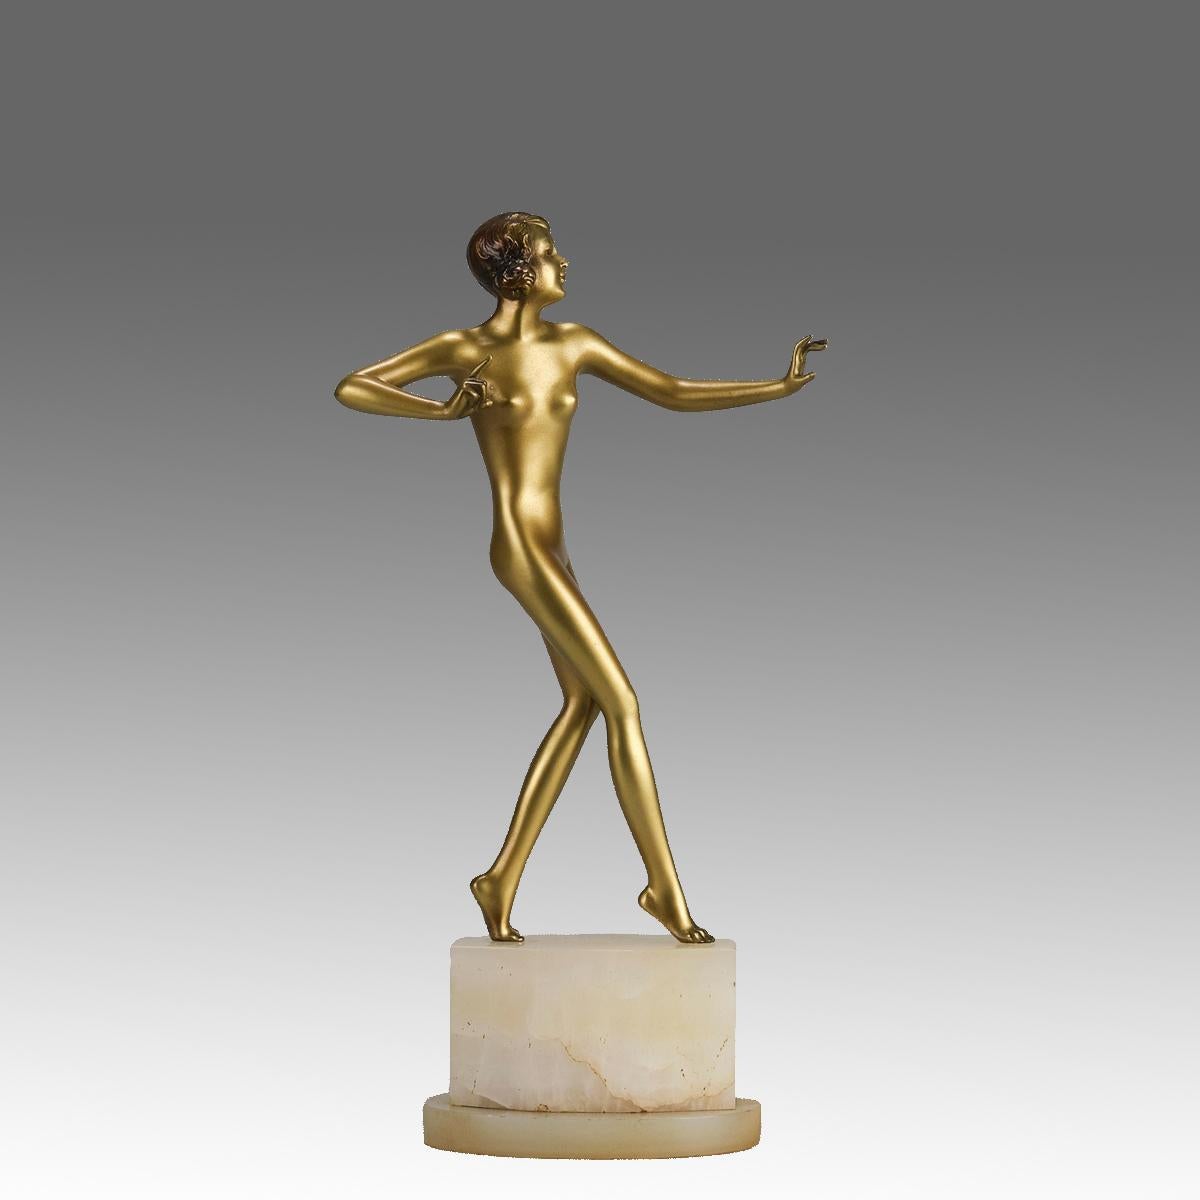 Eine attraktive, kalt bemalte Bronzefigur einer Tänzerin aus dem frühen 20. Jahrhundert in auffälliger Pose mit ausgezeichneten Farben und sehr feinen Oberflächendetails, die auf einem hohen Sockel aus brasilianischem grünem Onyx steht und mit R.Lor